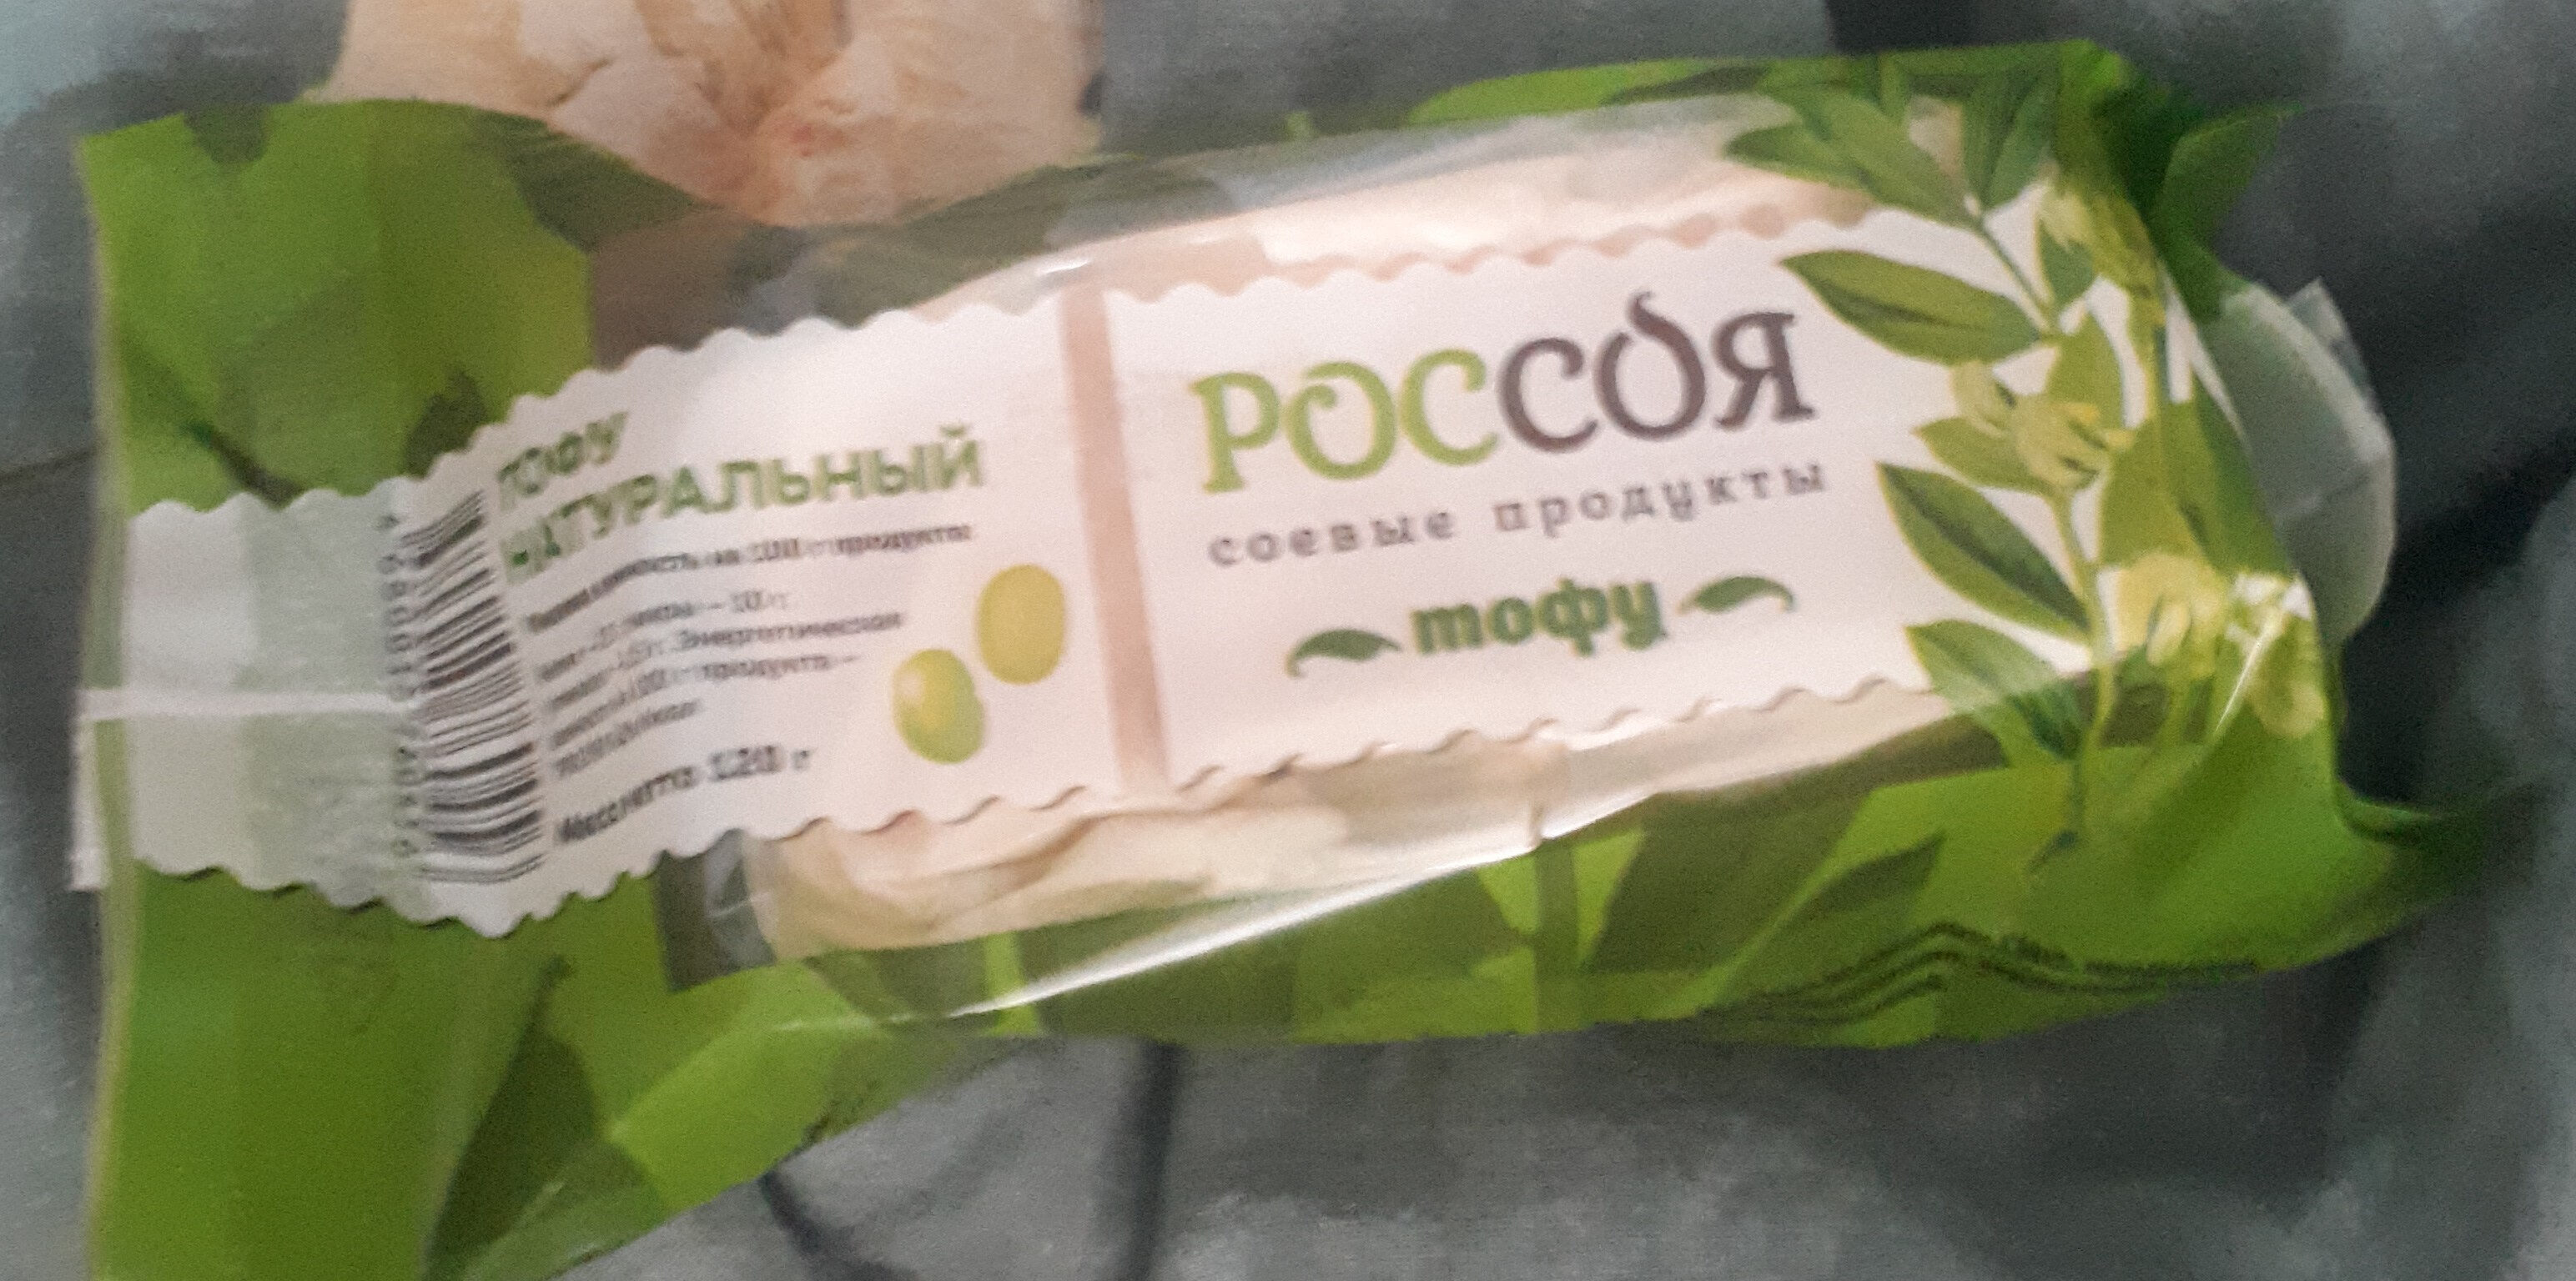 Тофу натуральный, Россоя - Продукт